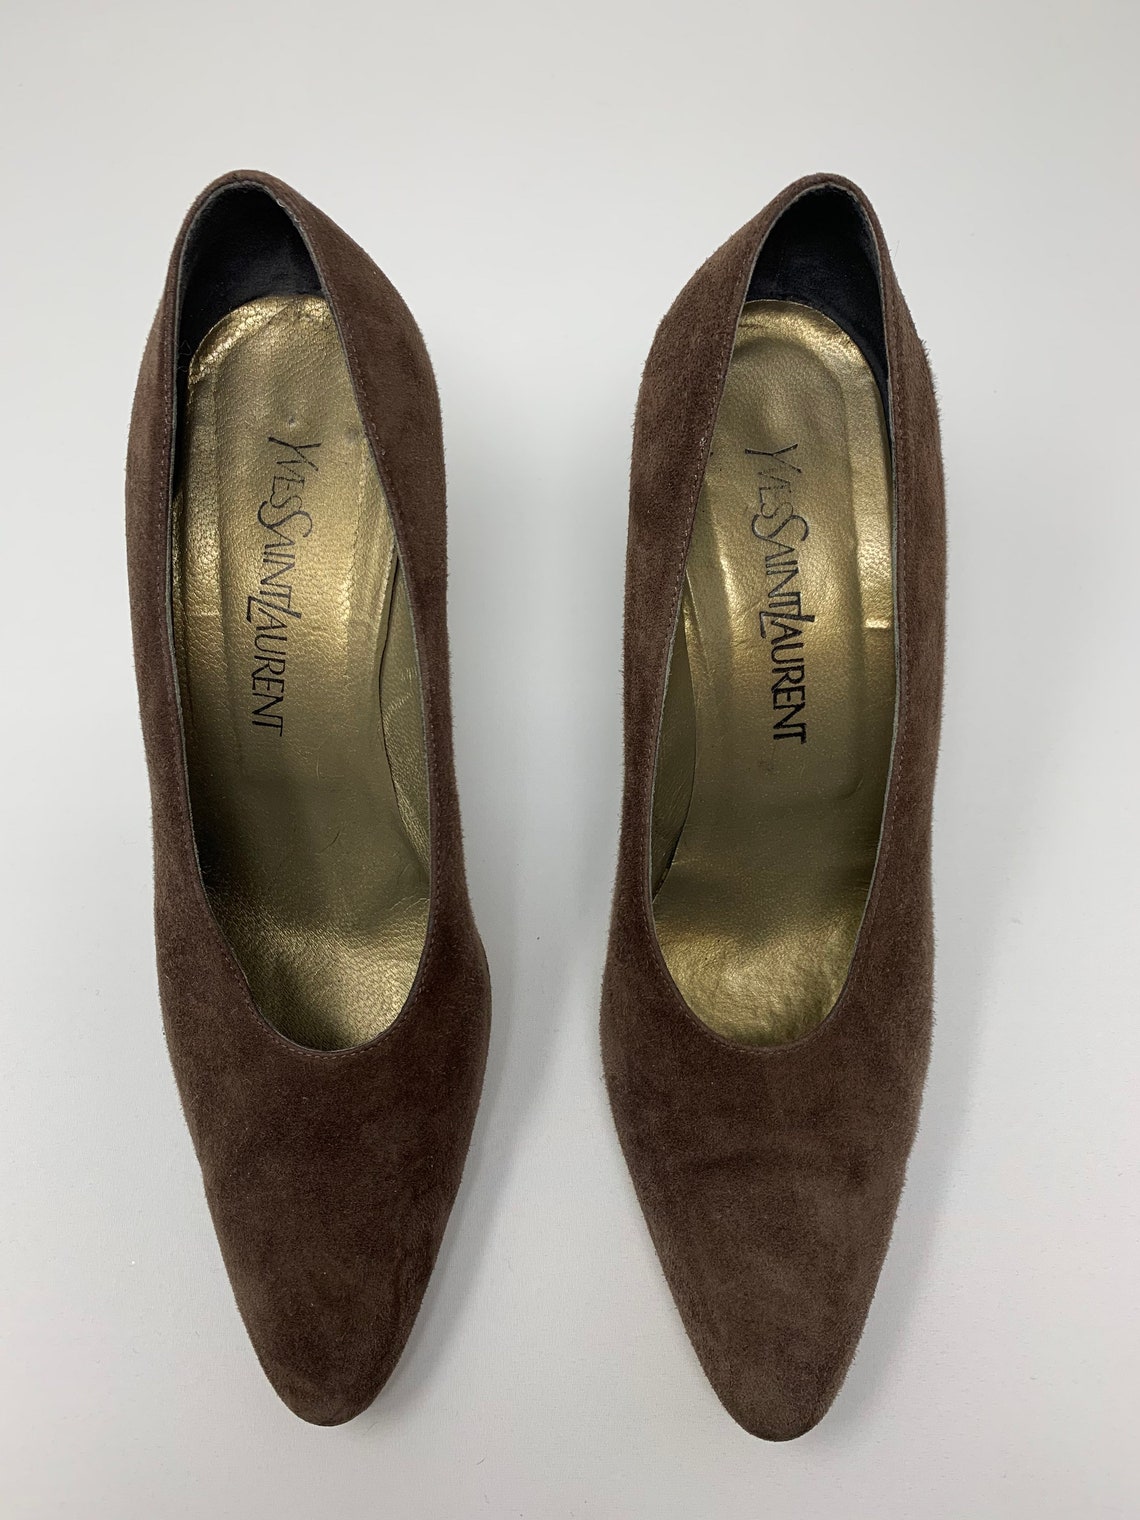 Vintage Yves Saint Laurent Heels size 7.5 Brown Suede | Etsy